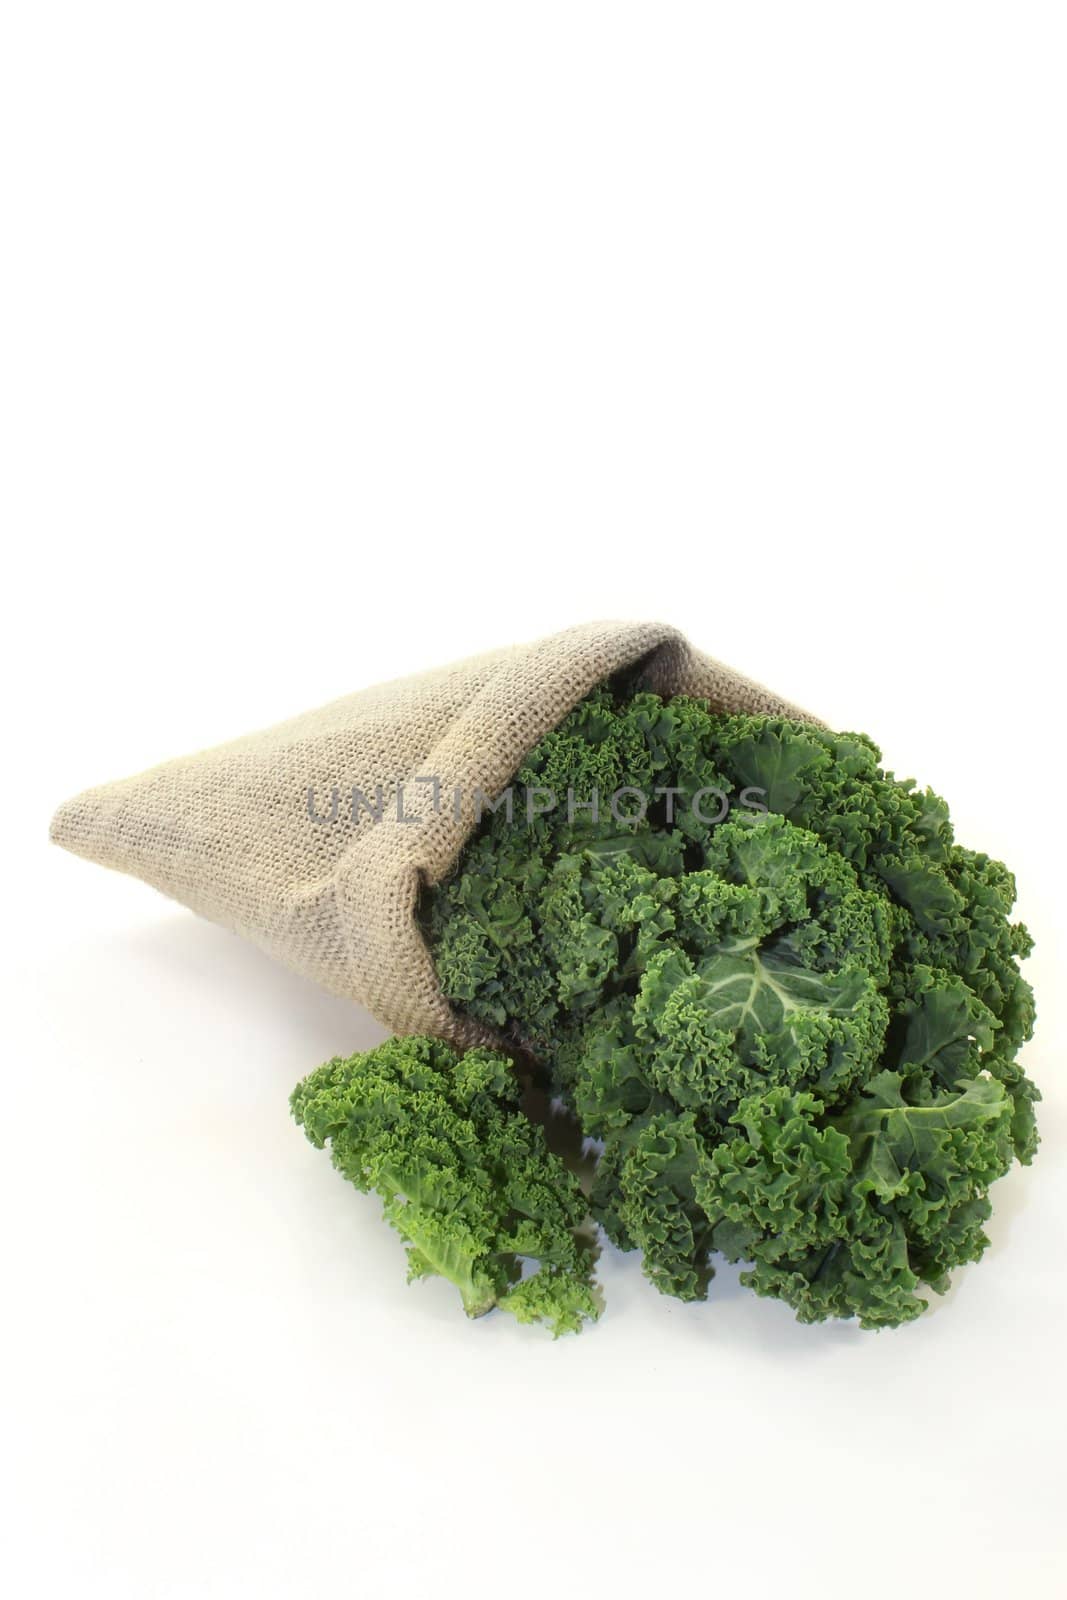 Kale by silencefoto